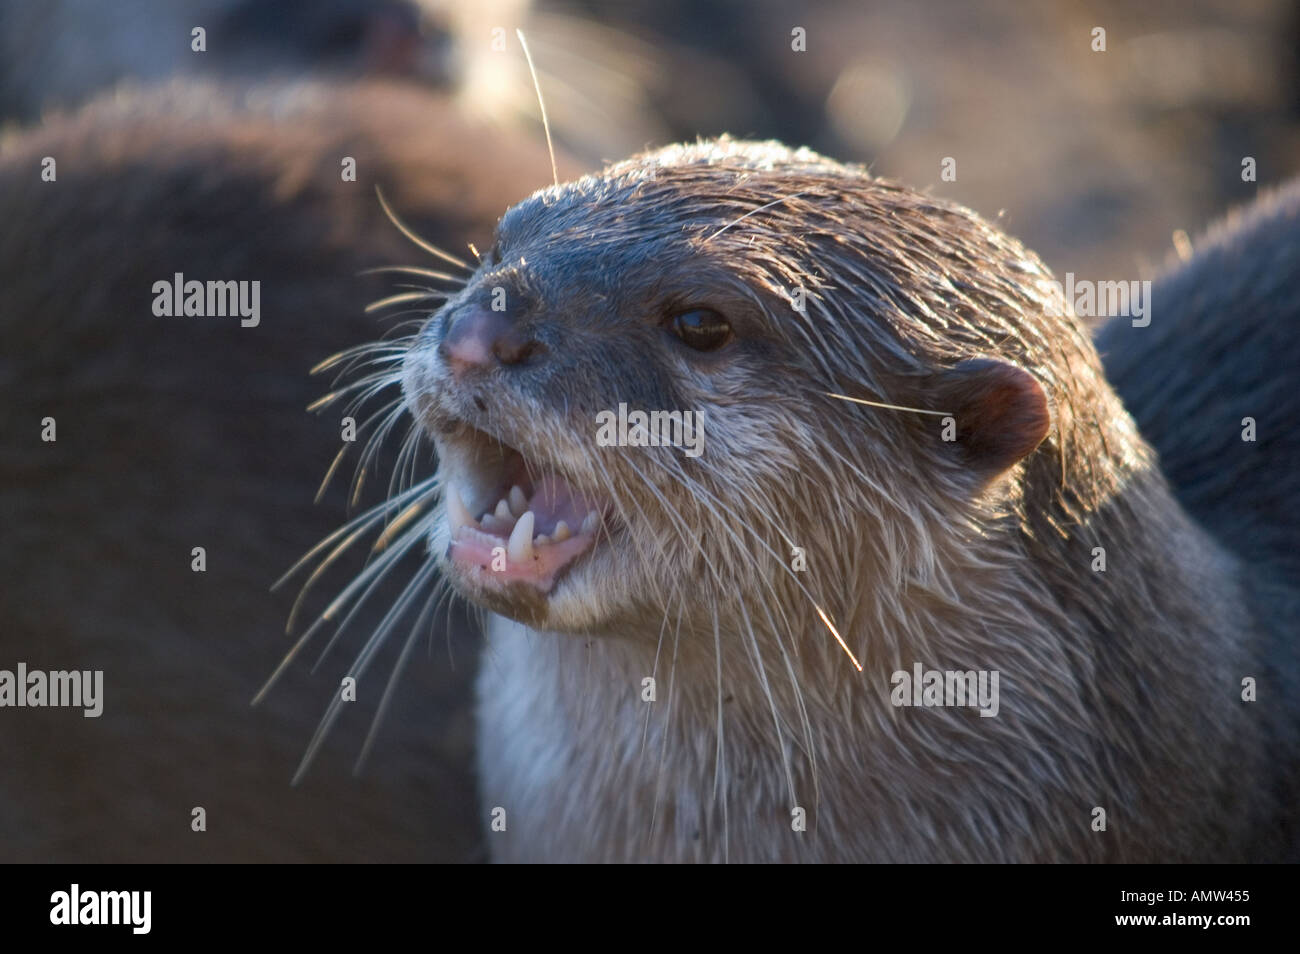 Orientalische kleine krallenbewehrten Otter entfremdet im Zoo von Edinburgh Schottland Merkmal laut rufen des Fischotters in Gruppenformen einen Chor Stockfoto